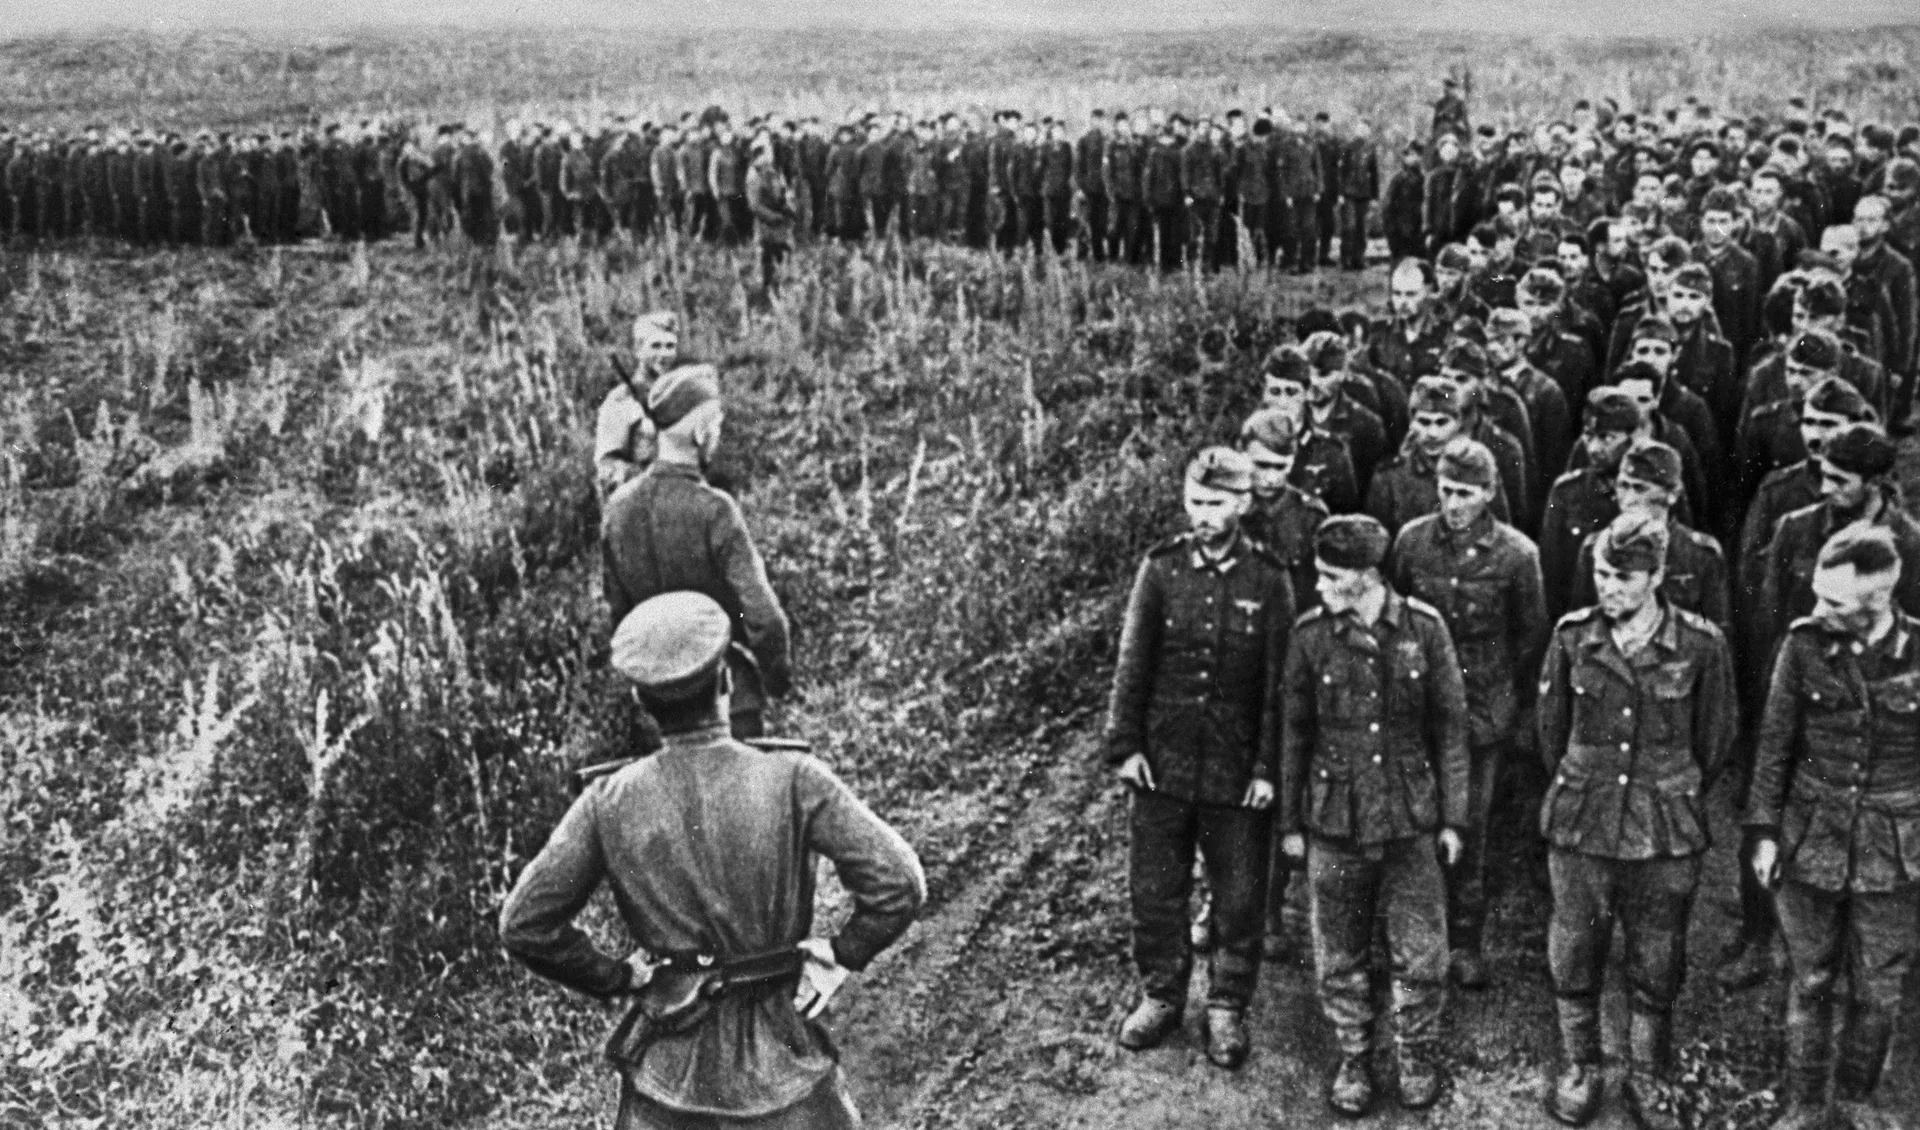 Немецкие солдаты и офицеры, взятые в плен в битве под Курском. Август 1943 - РИА Новости, 1920, 02.12.2020